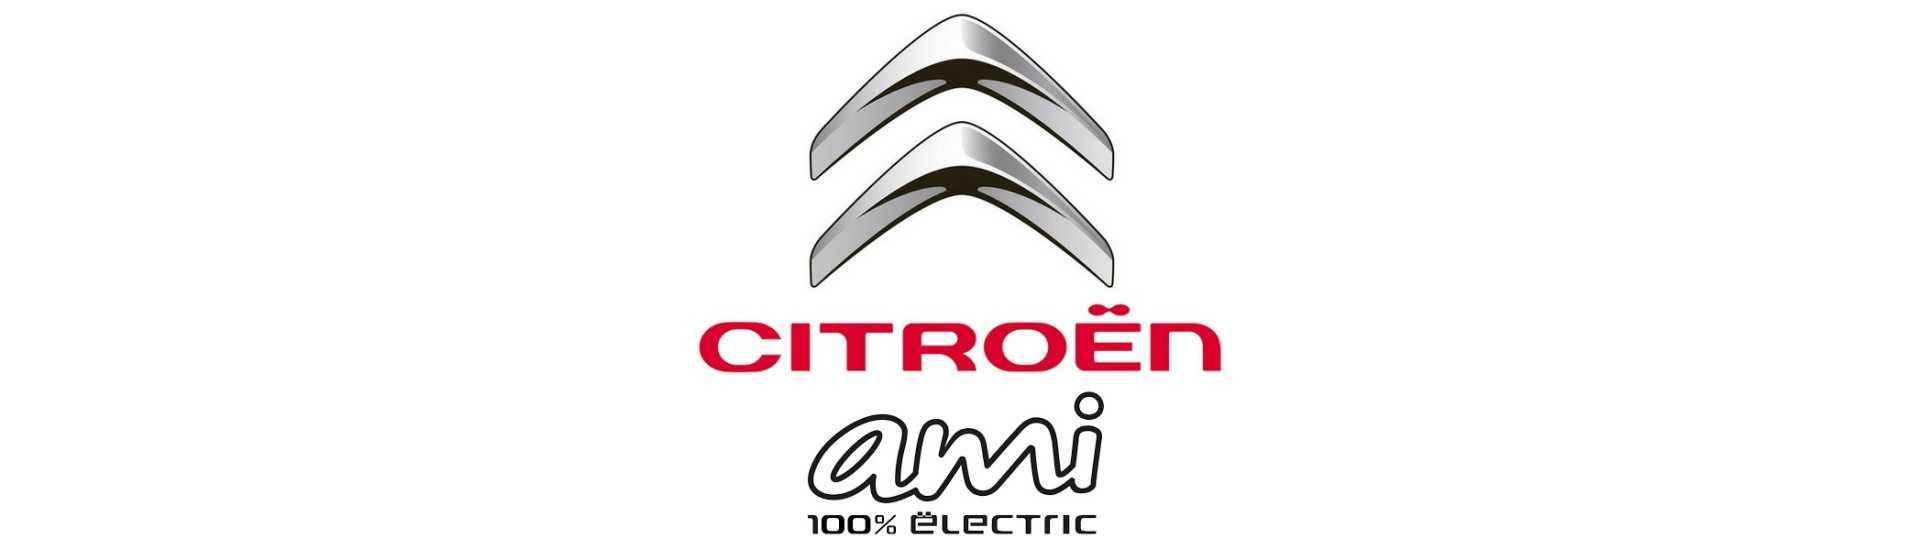 Vindruta till bästa pris för en bil utan körkort Citroën Ami